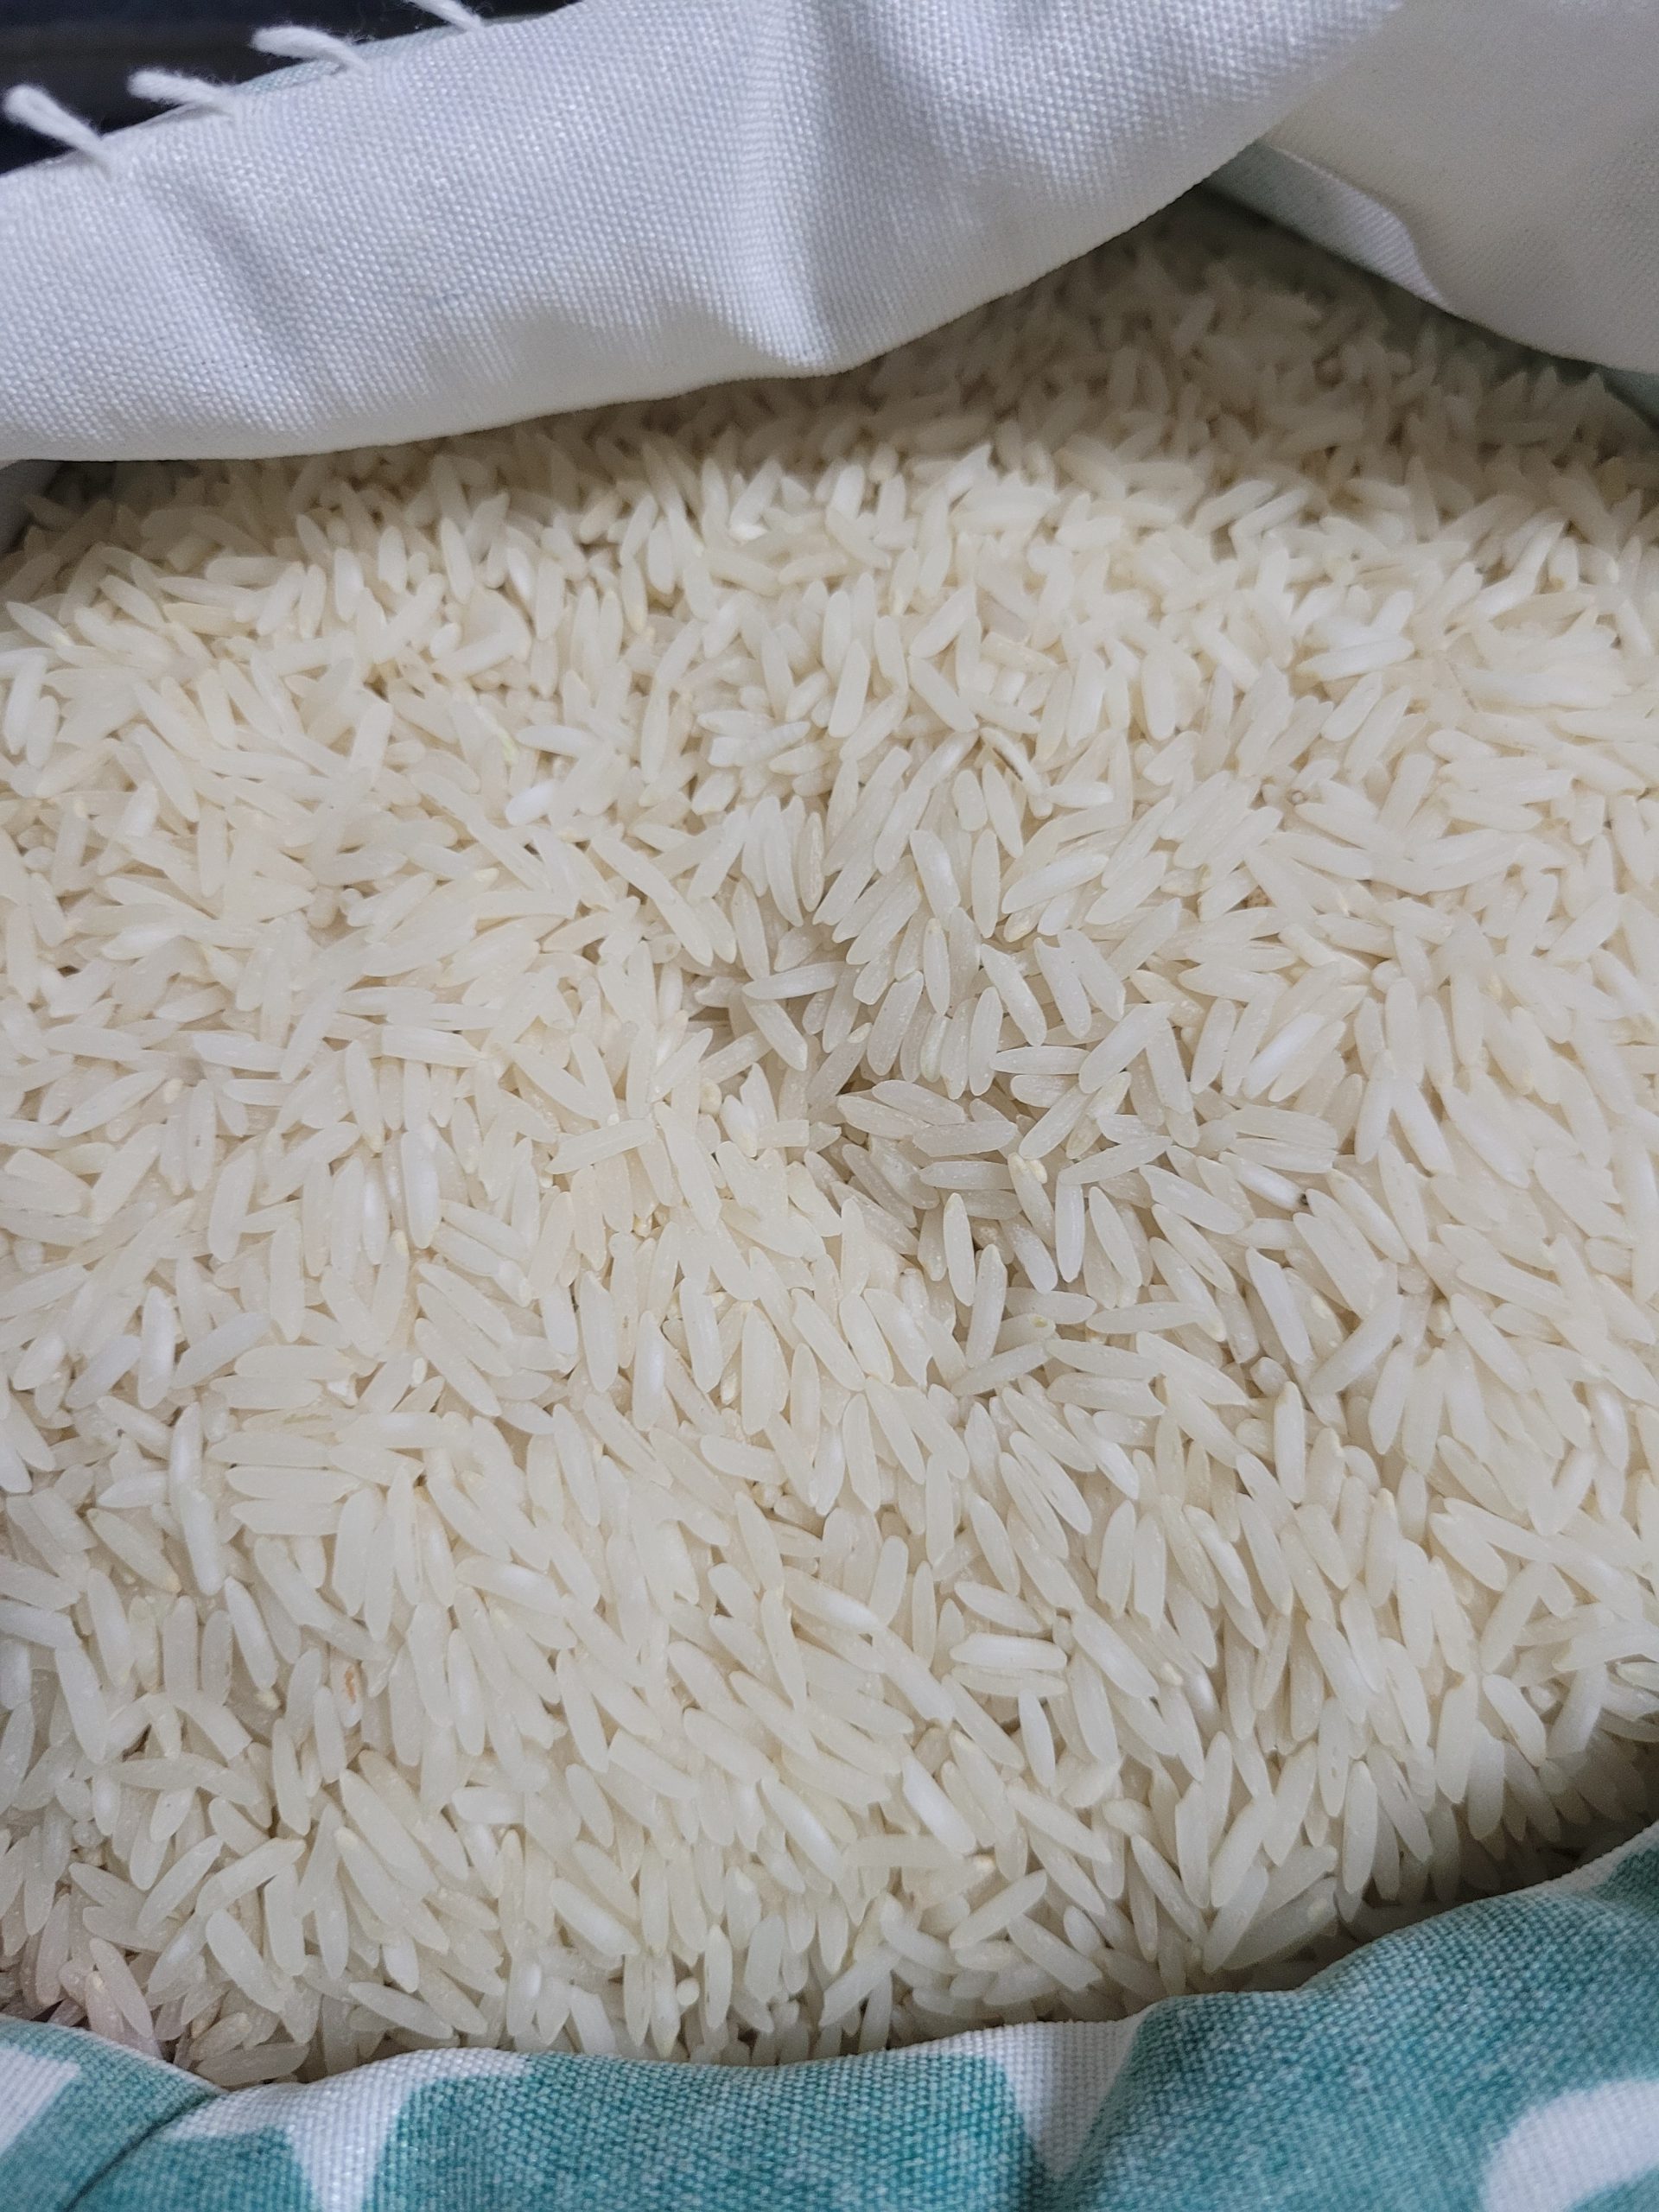 واردات دوباره برنج باعث نابودی شالیکاران می شود